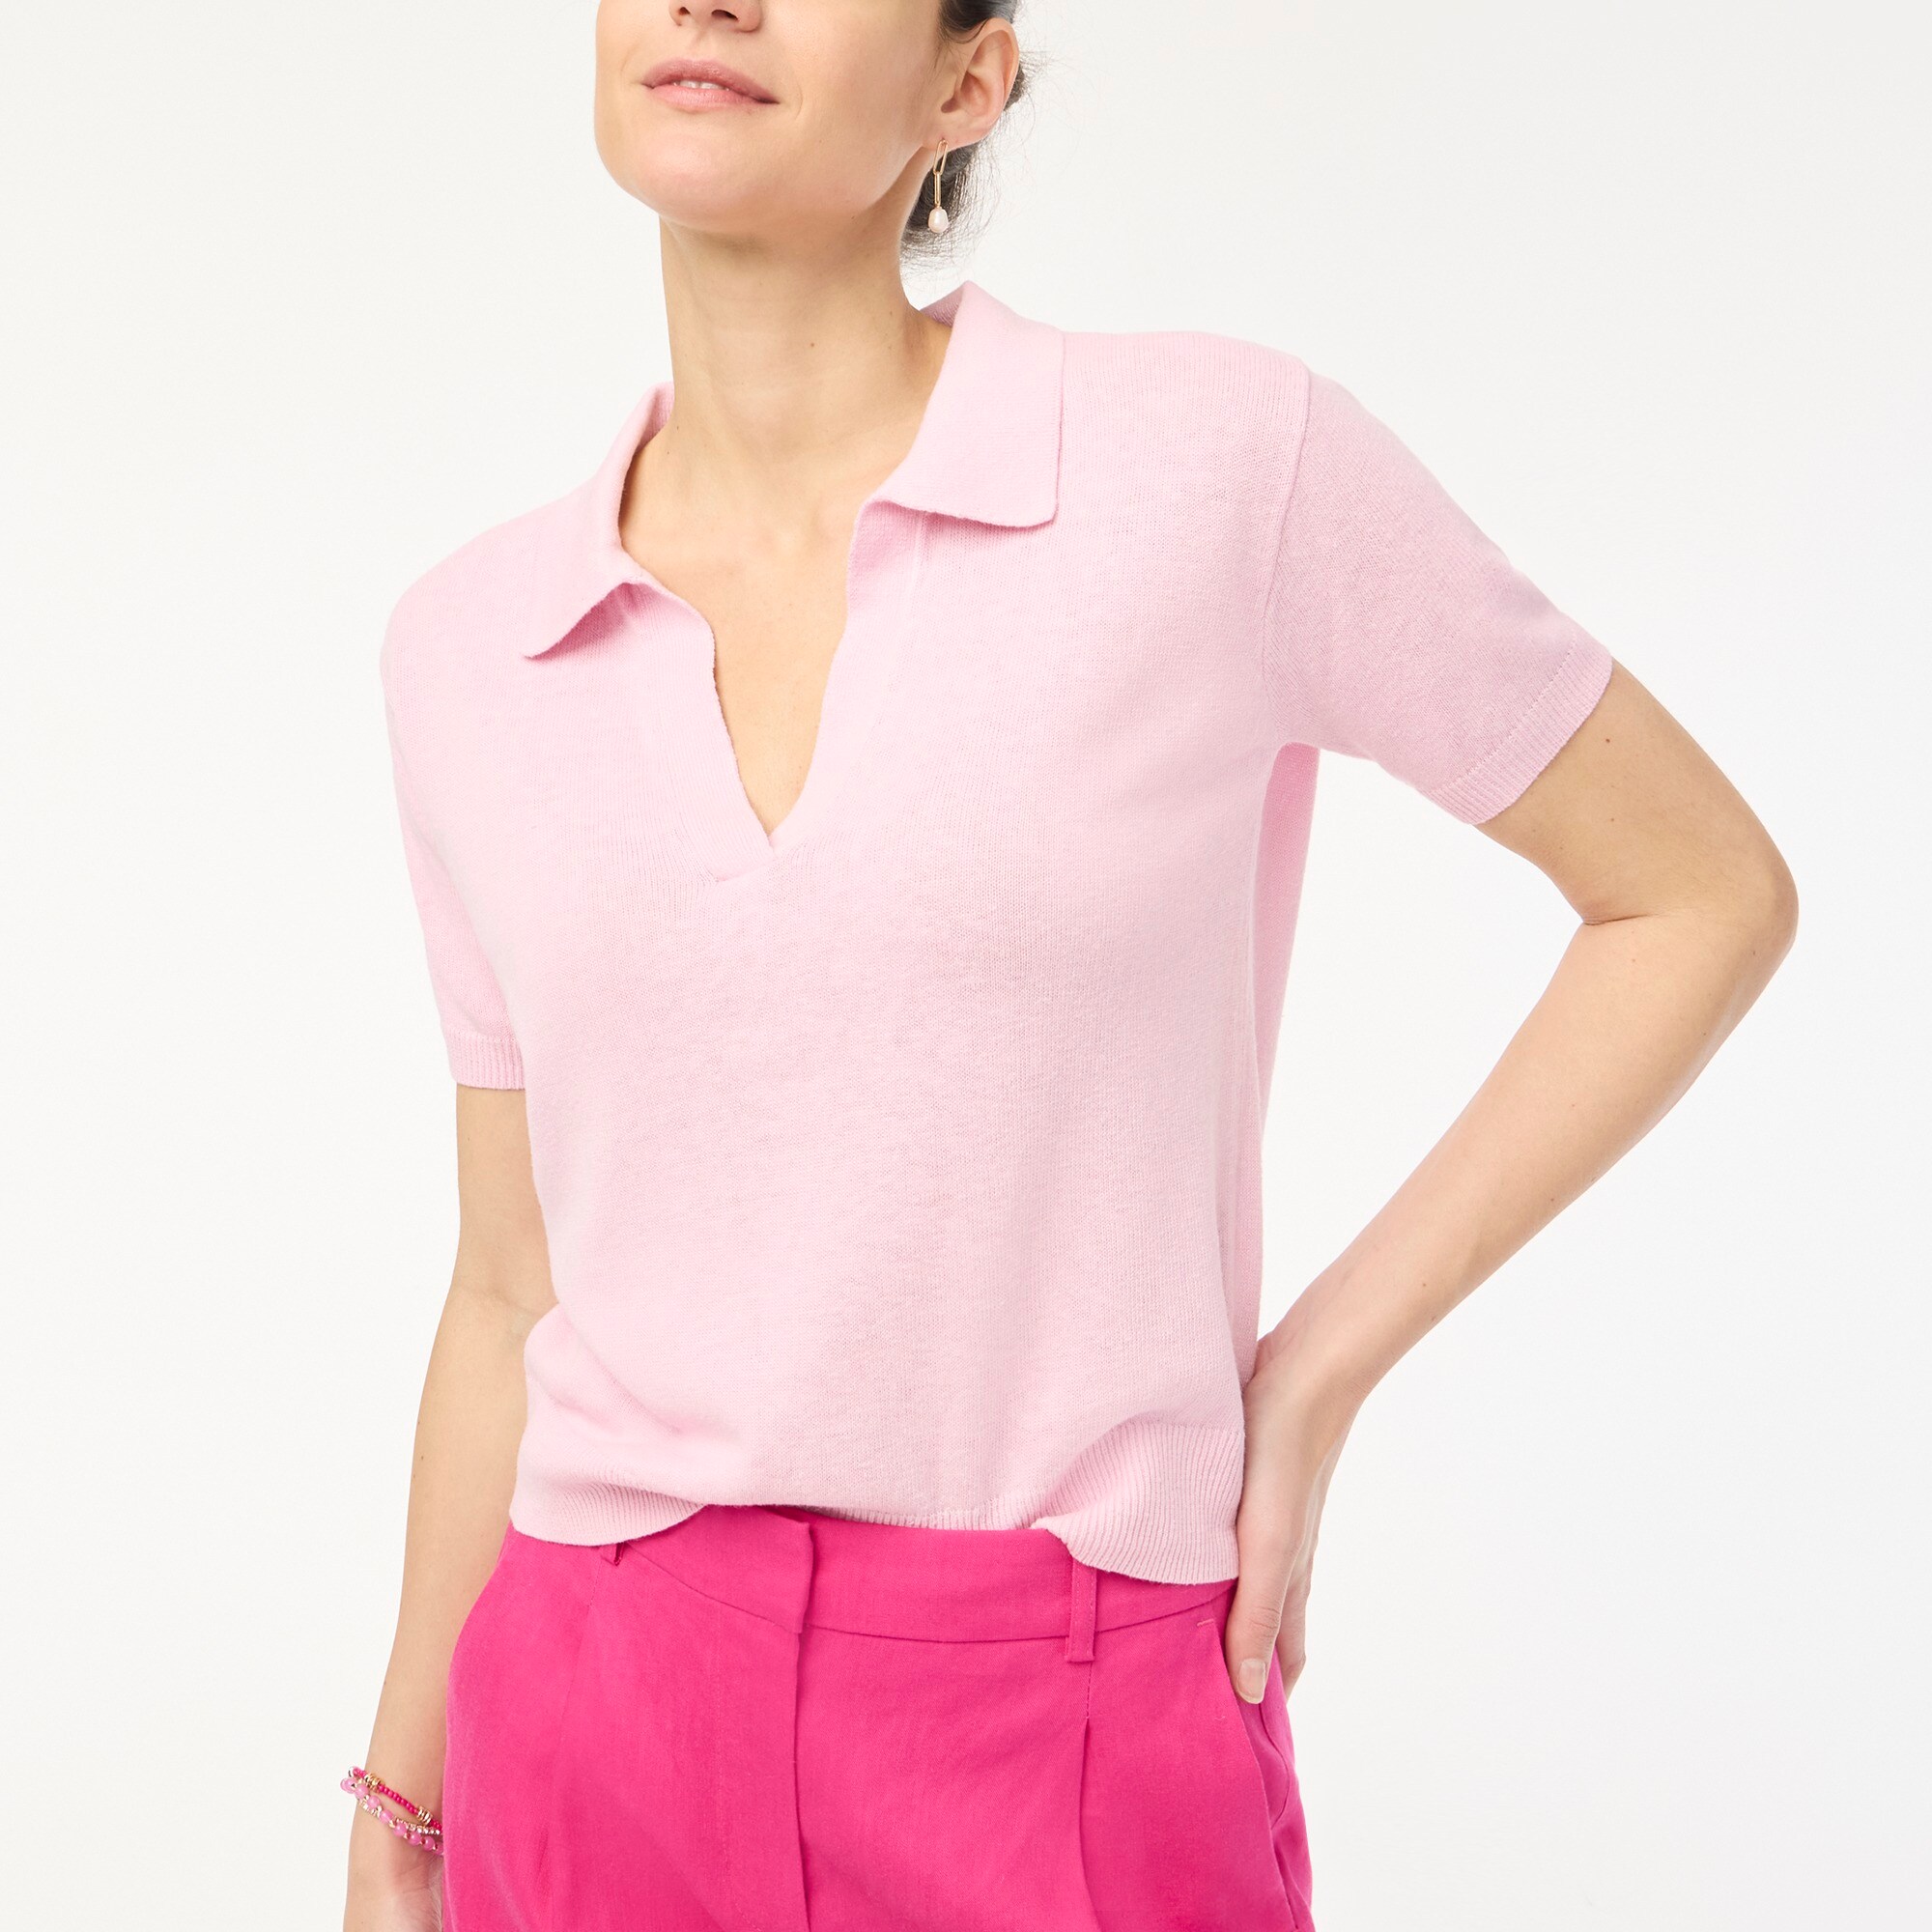  Linen-blend short-sleeve polo sweater